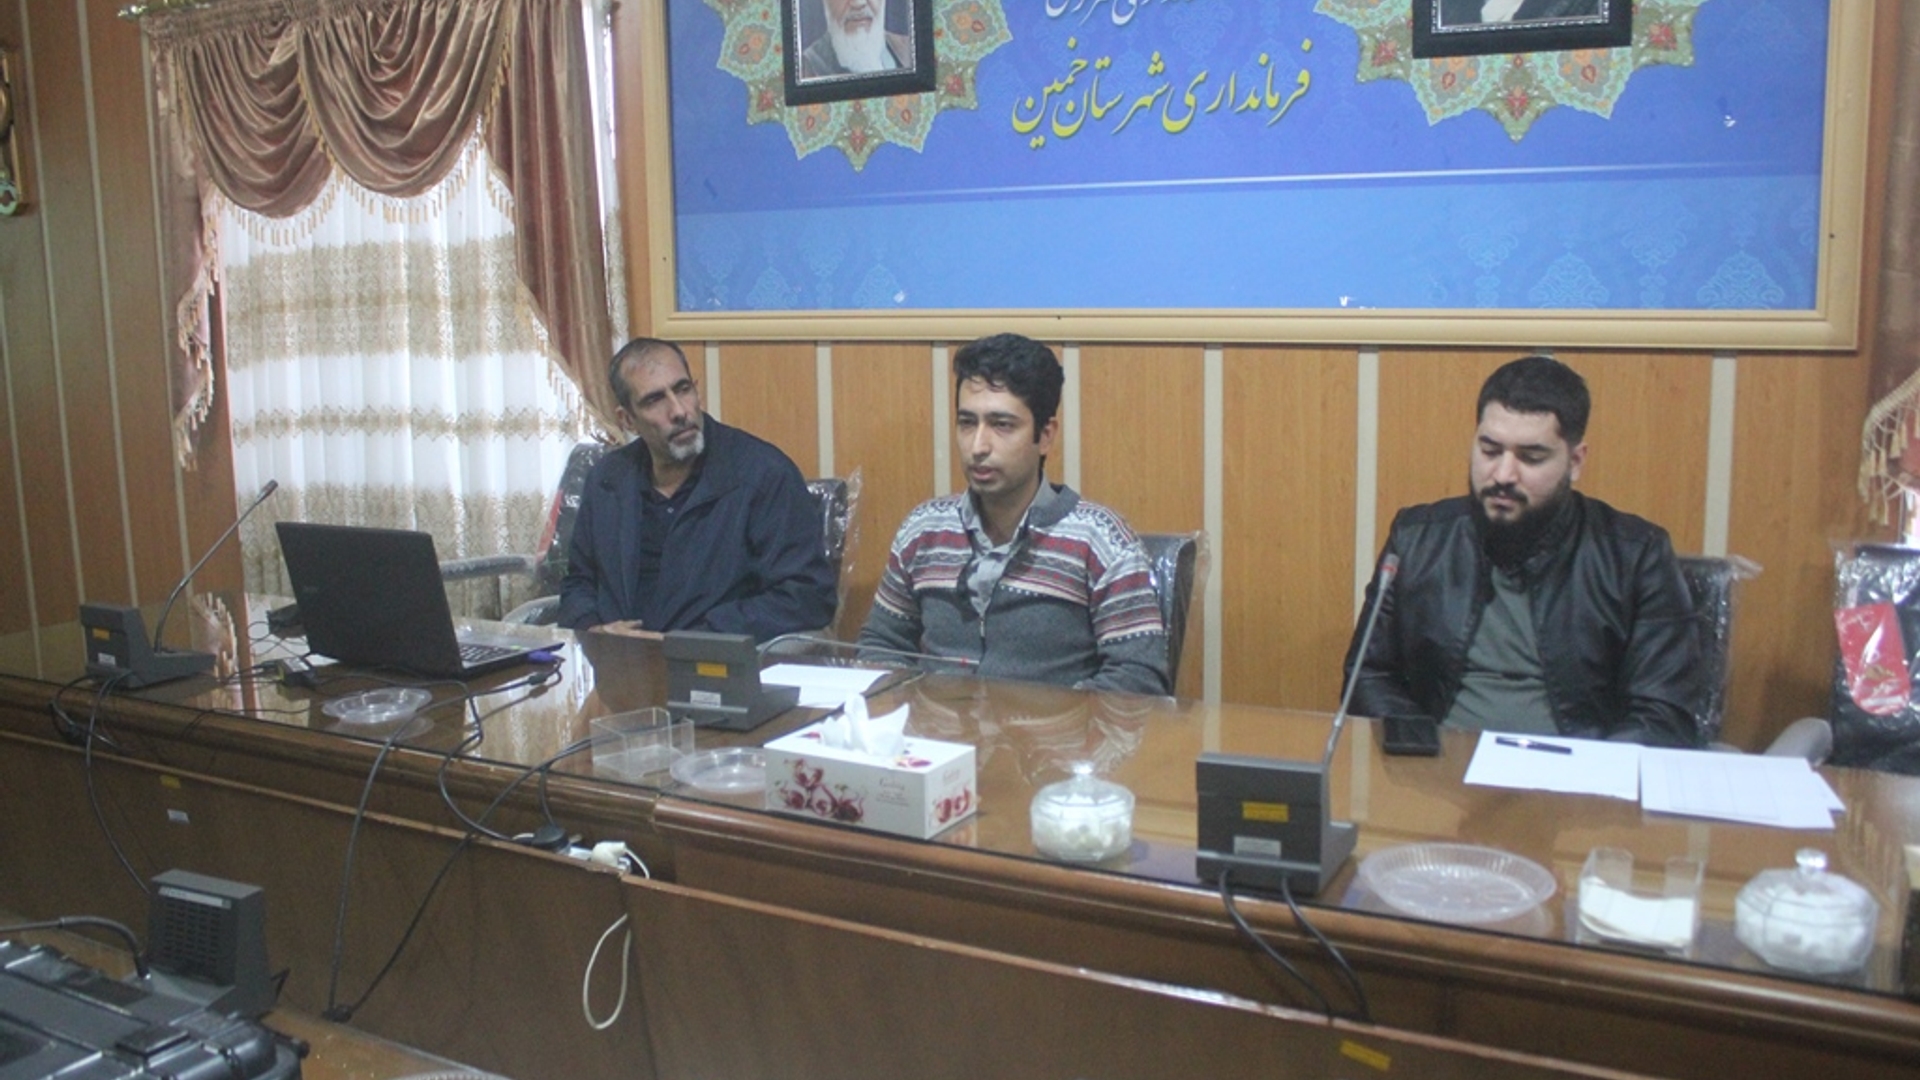 اولین جلسه آموزش تخصصی کاربران رایانه انتخابات شهرستان خمین برگزار شد